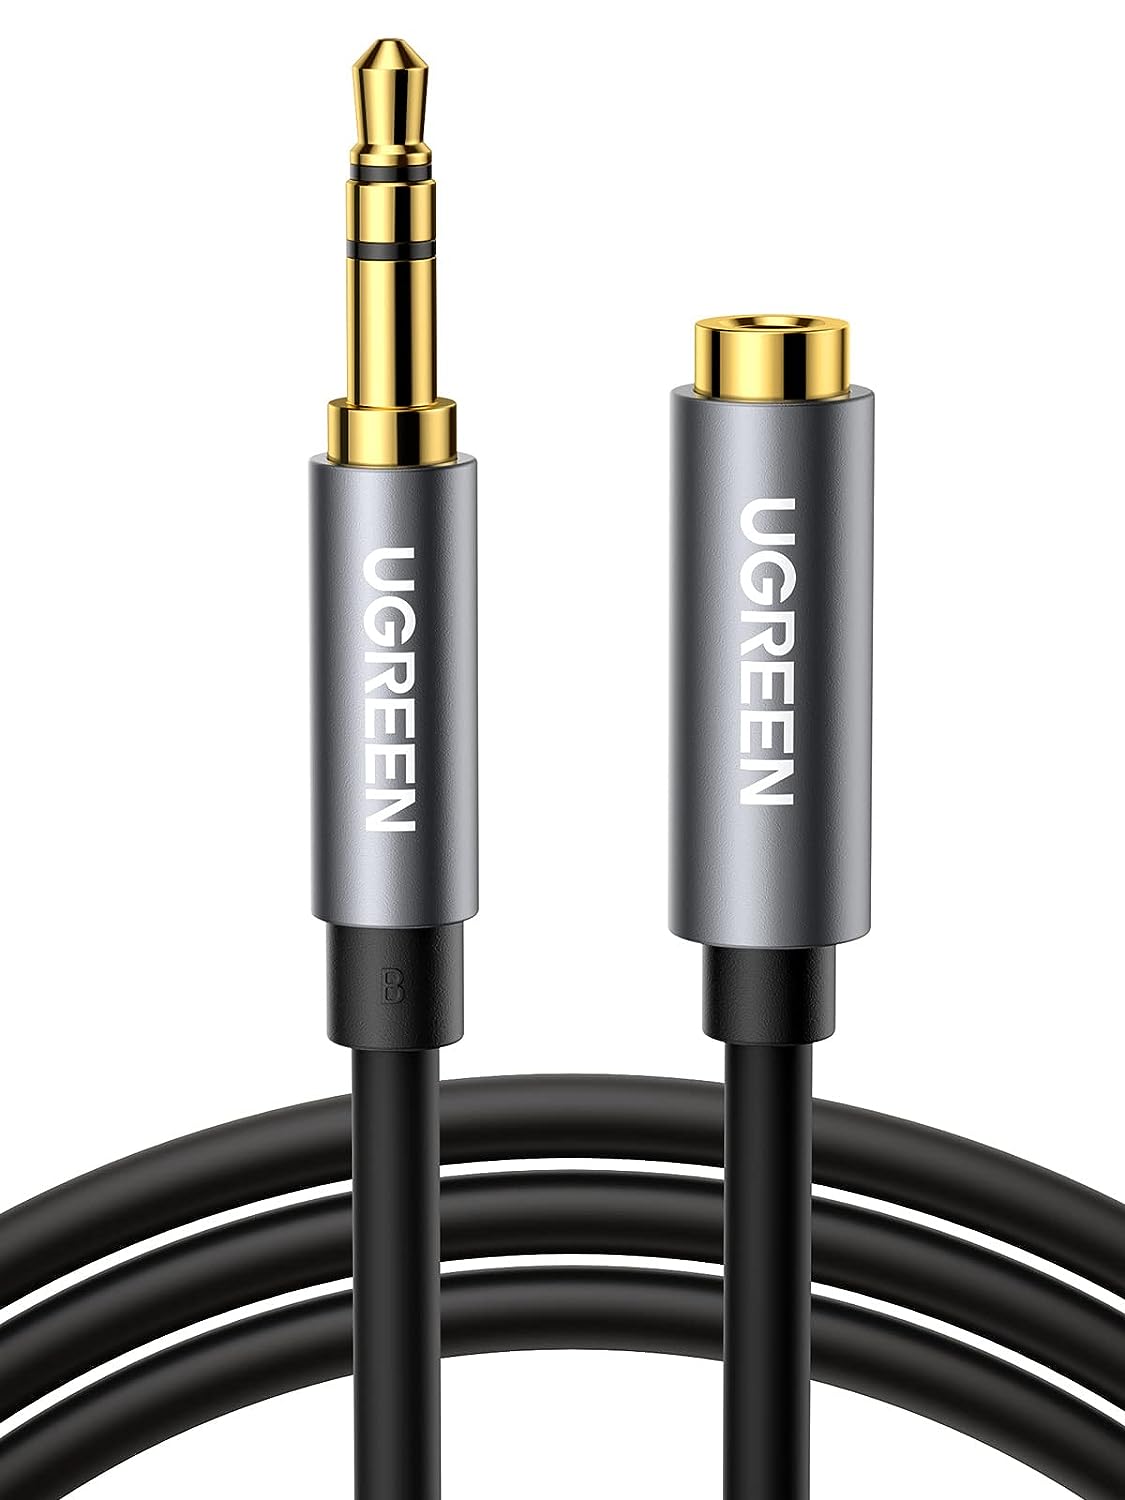 10593 Аудио кабель 3,5мм - 3,5мм UGREEN AV118, цвет - черный, длина 1,5м.